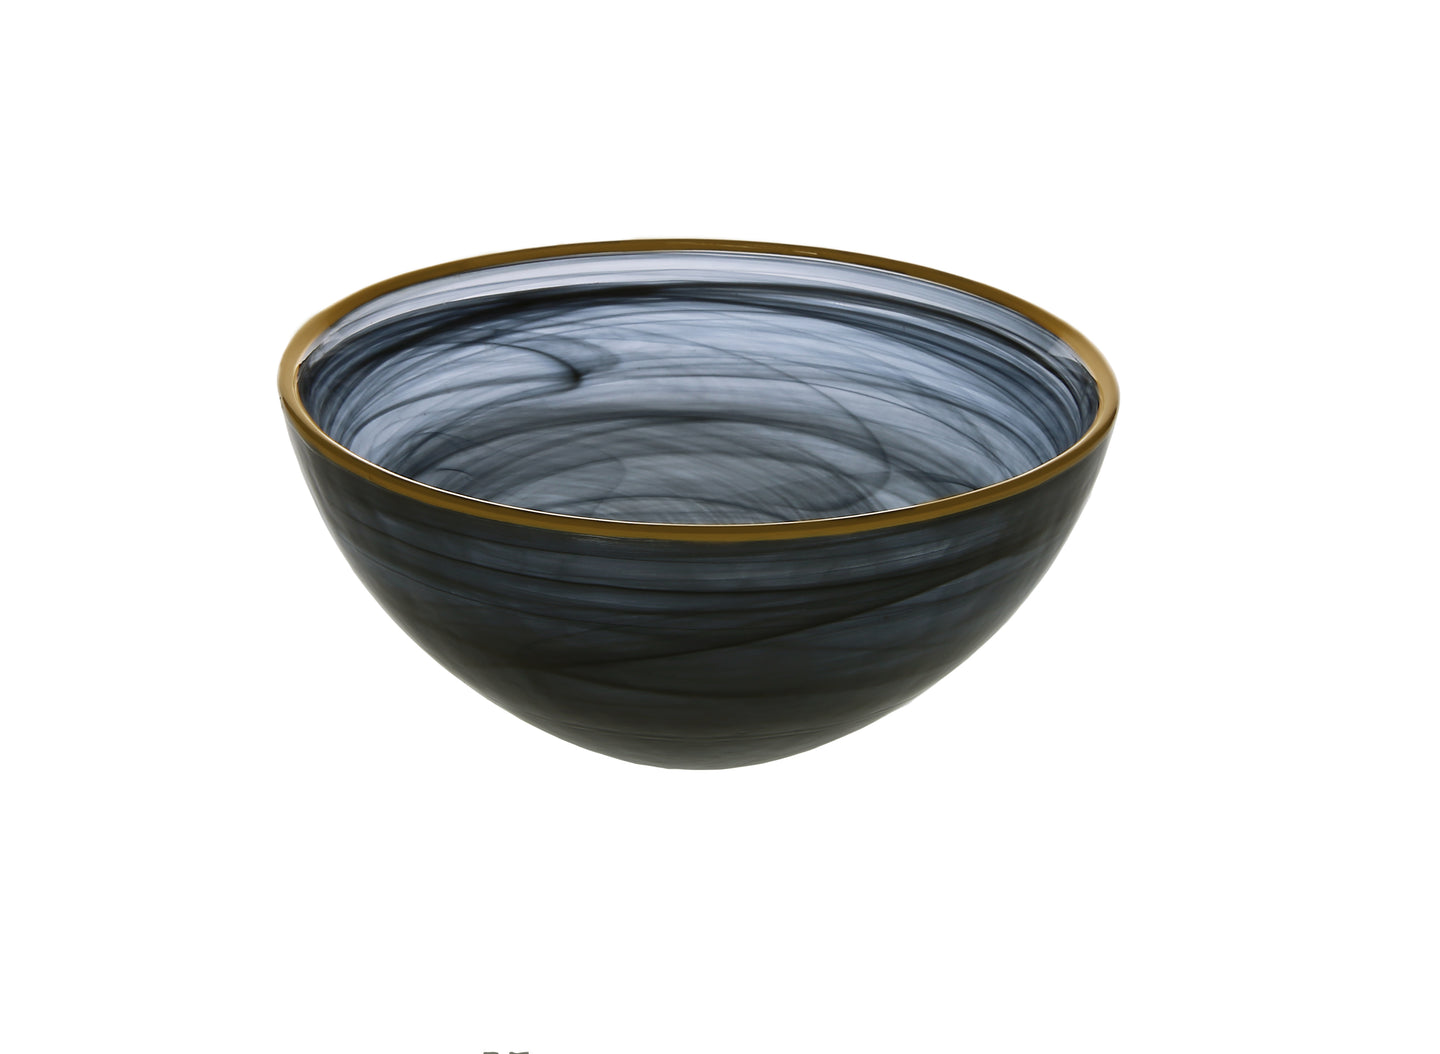 Black Alabaster Bowl With Gold Rim - 6.25